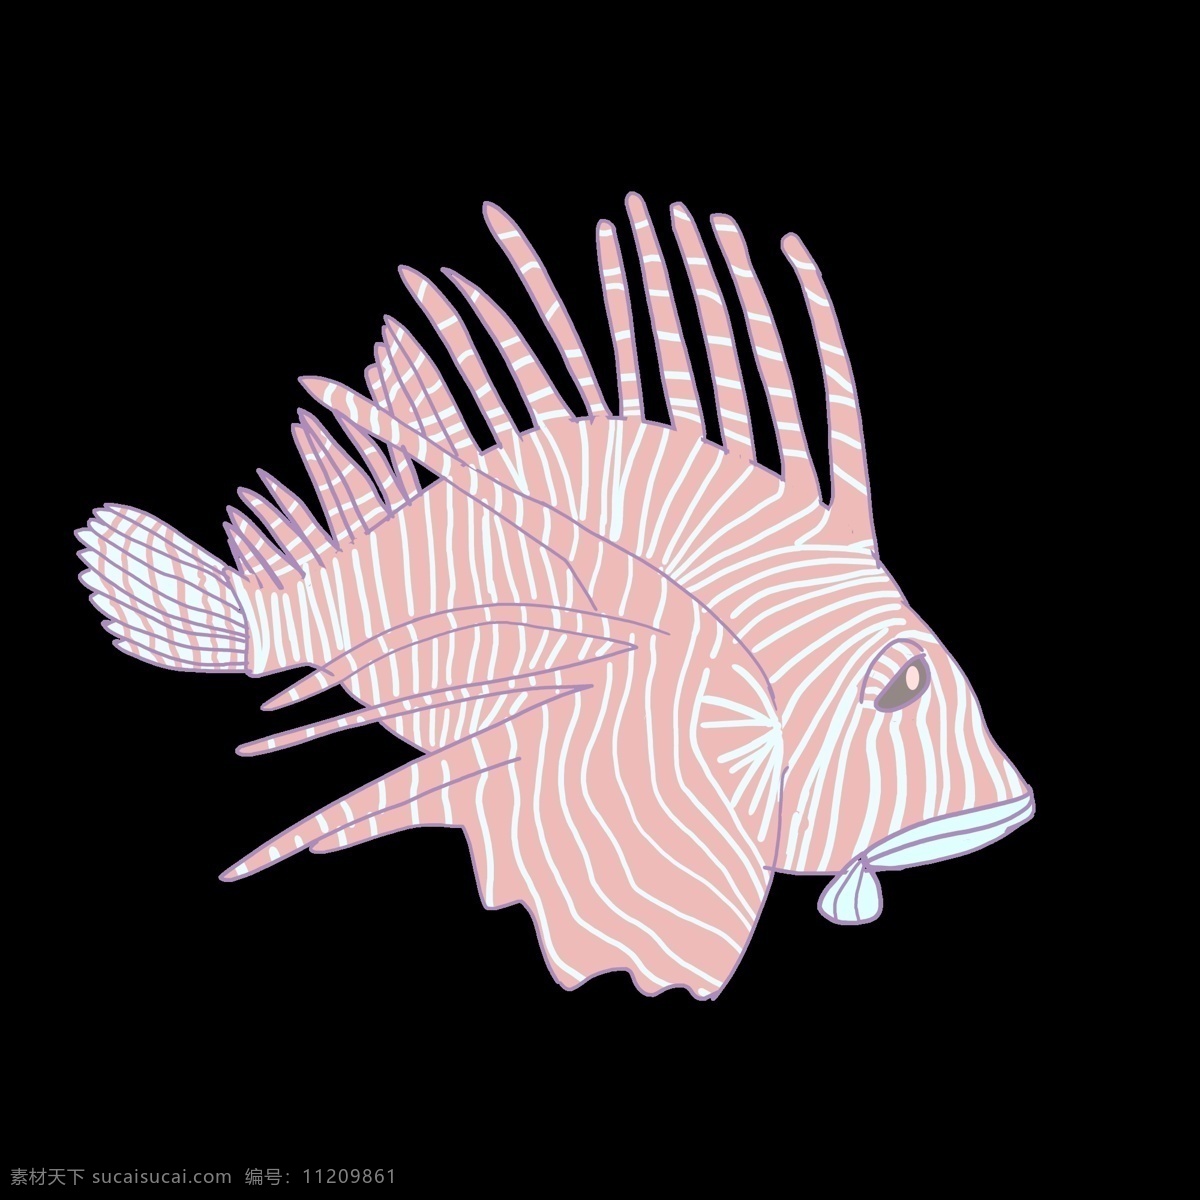 海洋生物鱼类 鱼 粉色鱼 海洋